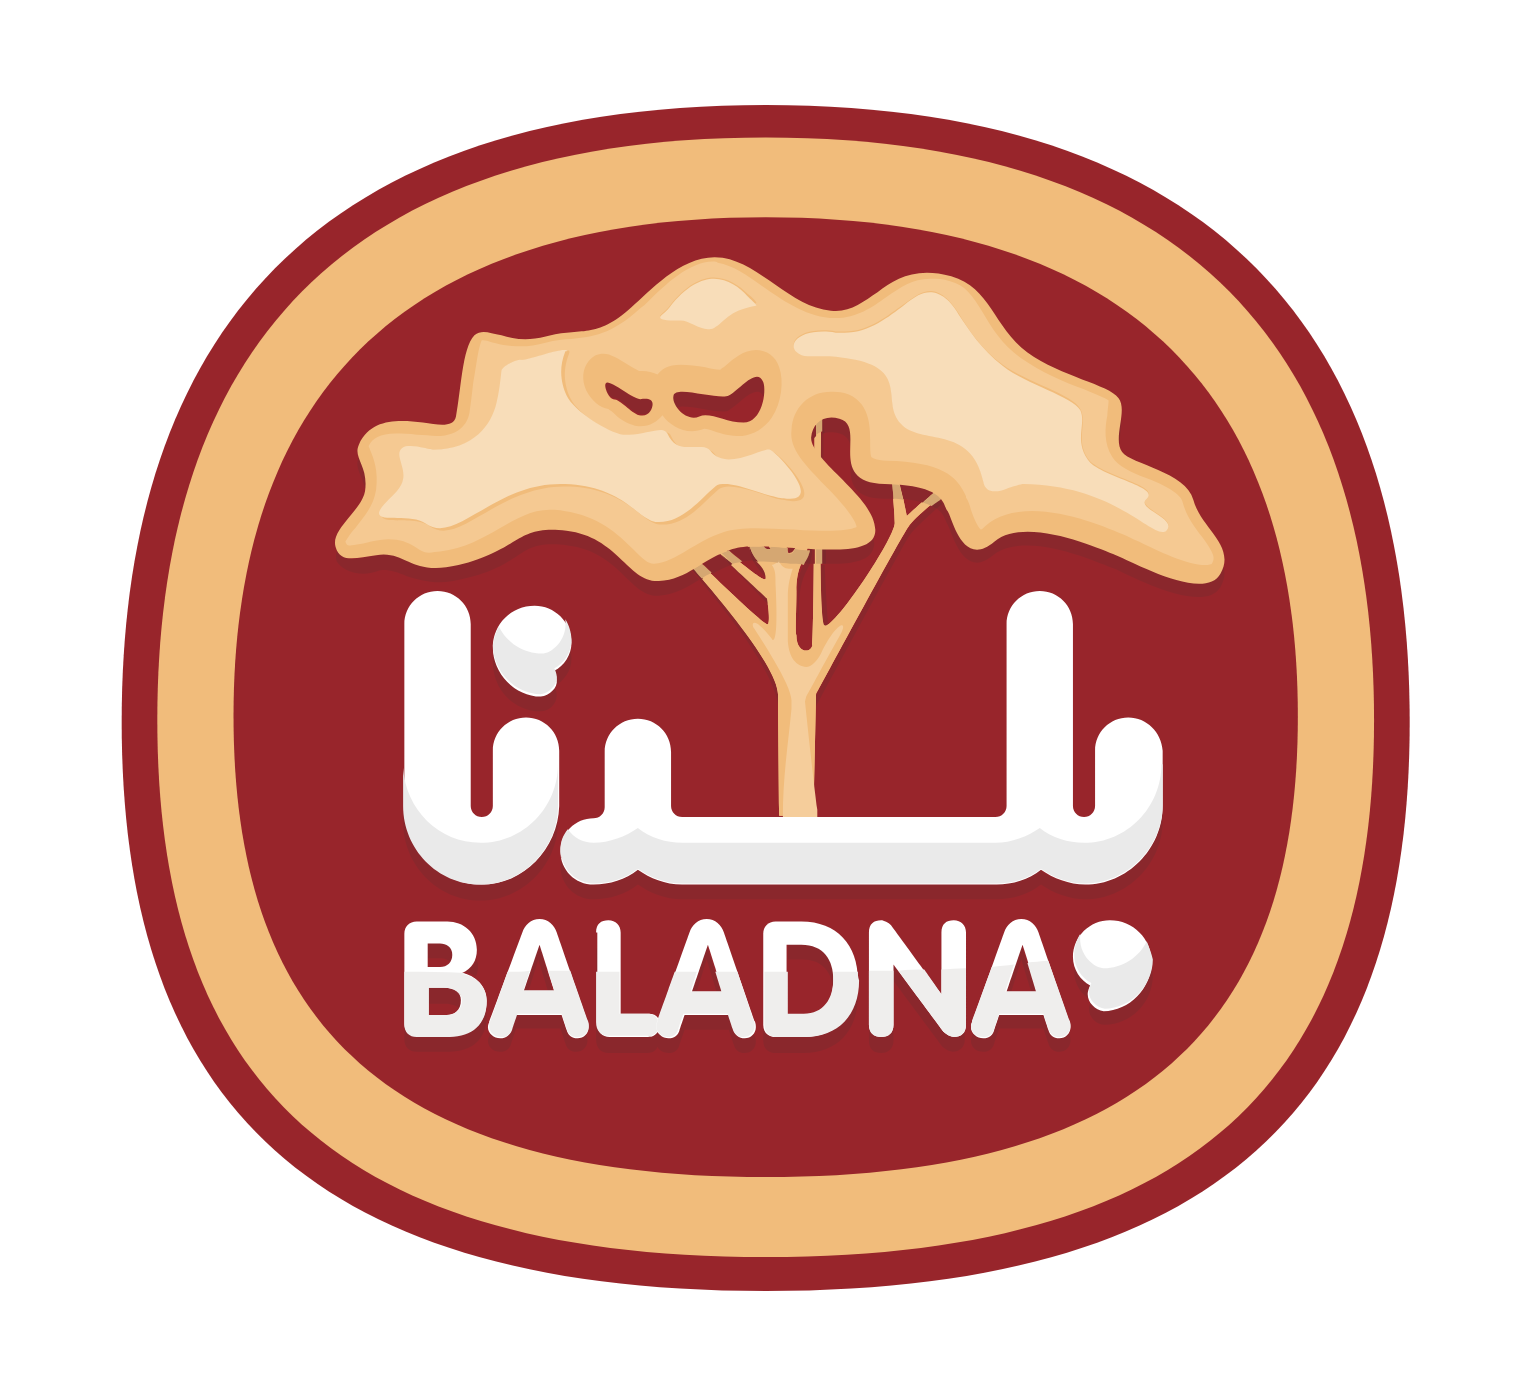 Baladna logo pour fonds sombres (PNG transparent)